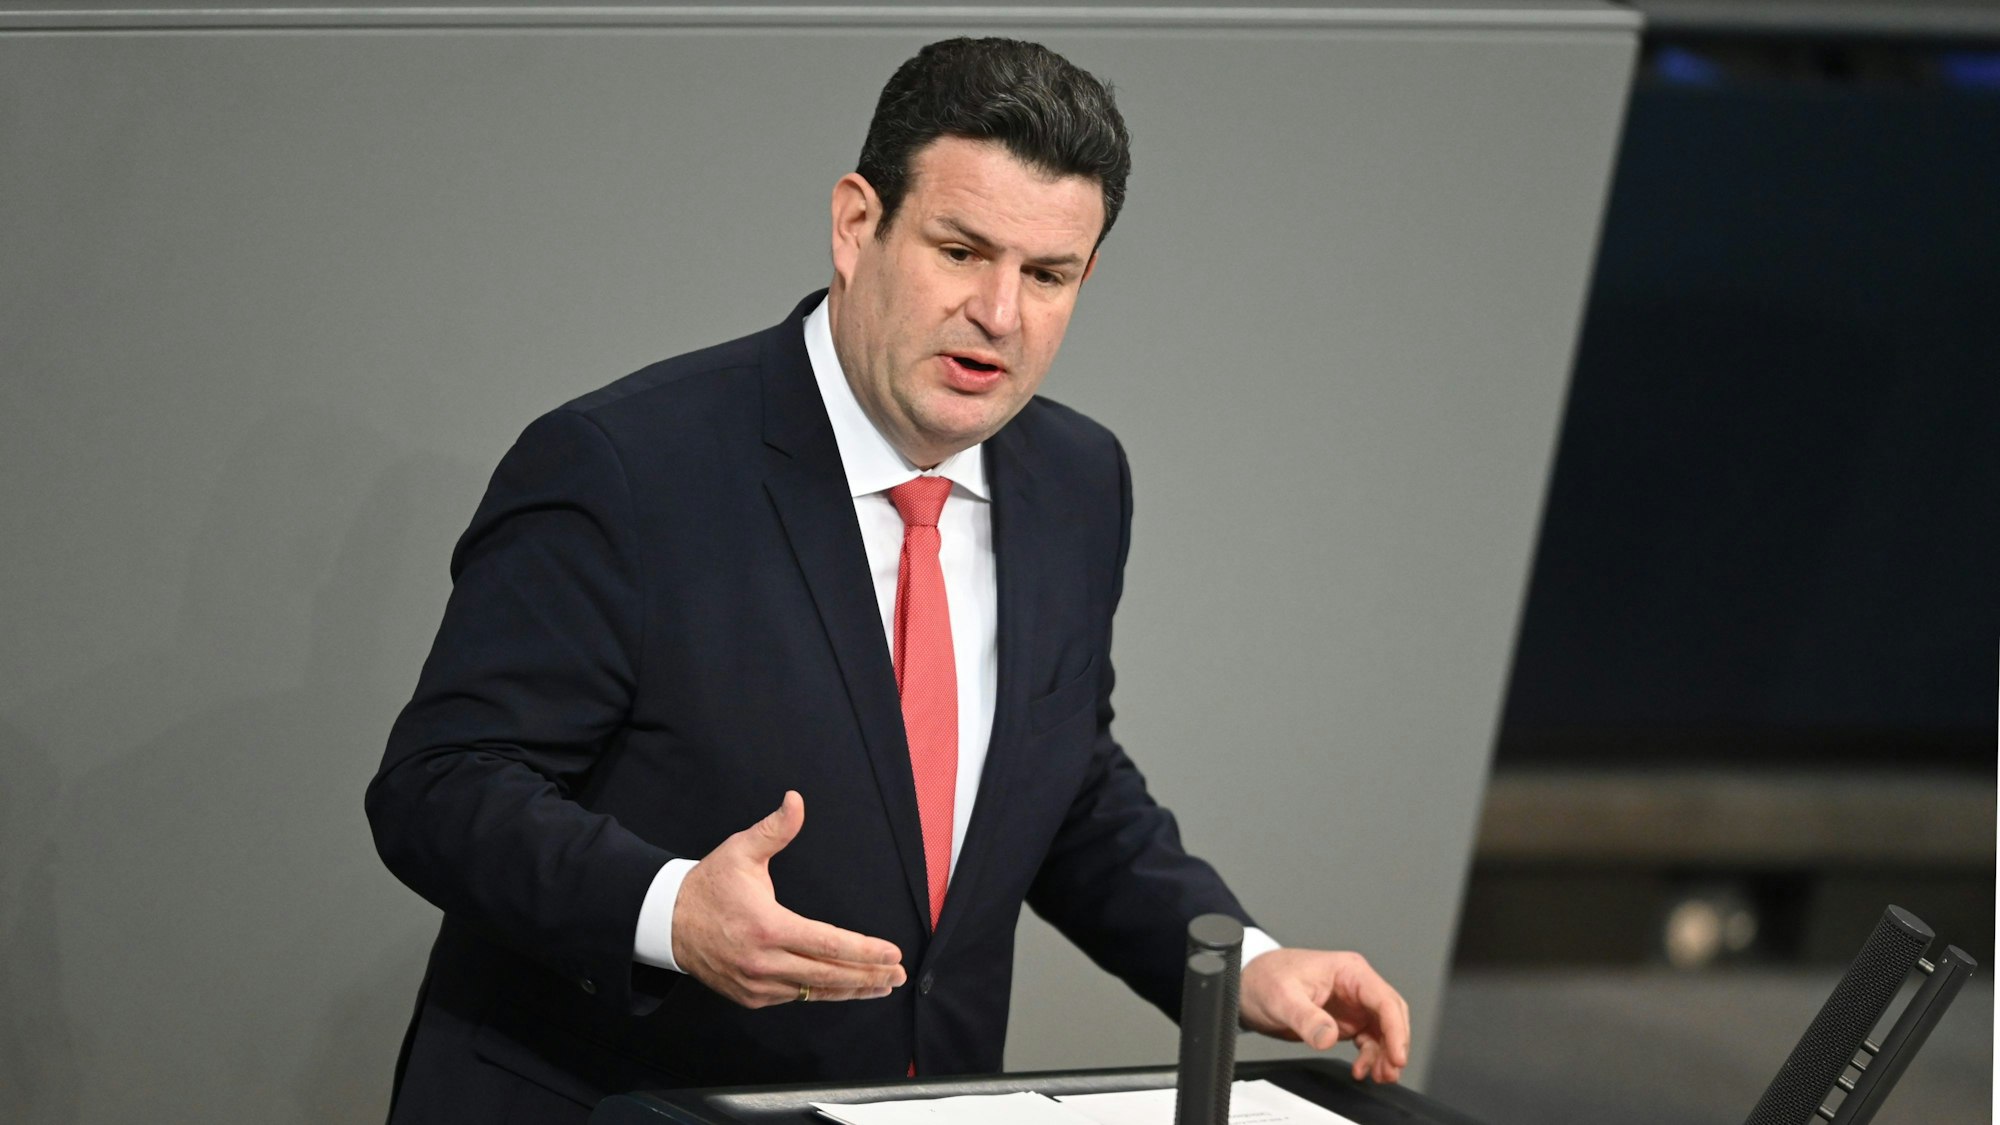 Hubertus Heil (SPD), Bundesminister für Arbeit und Soziales, spricht am Rednerpult im Plenum des Deutschen Bundestags. Er trägt einen schwarzen Anzug und rote Krawatte.